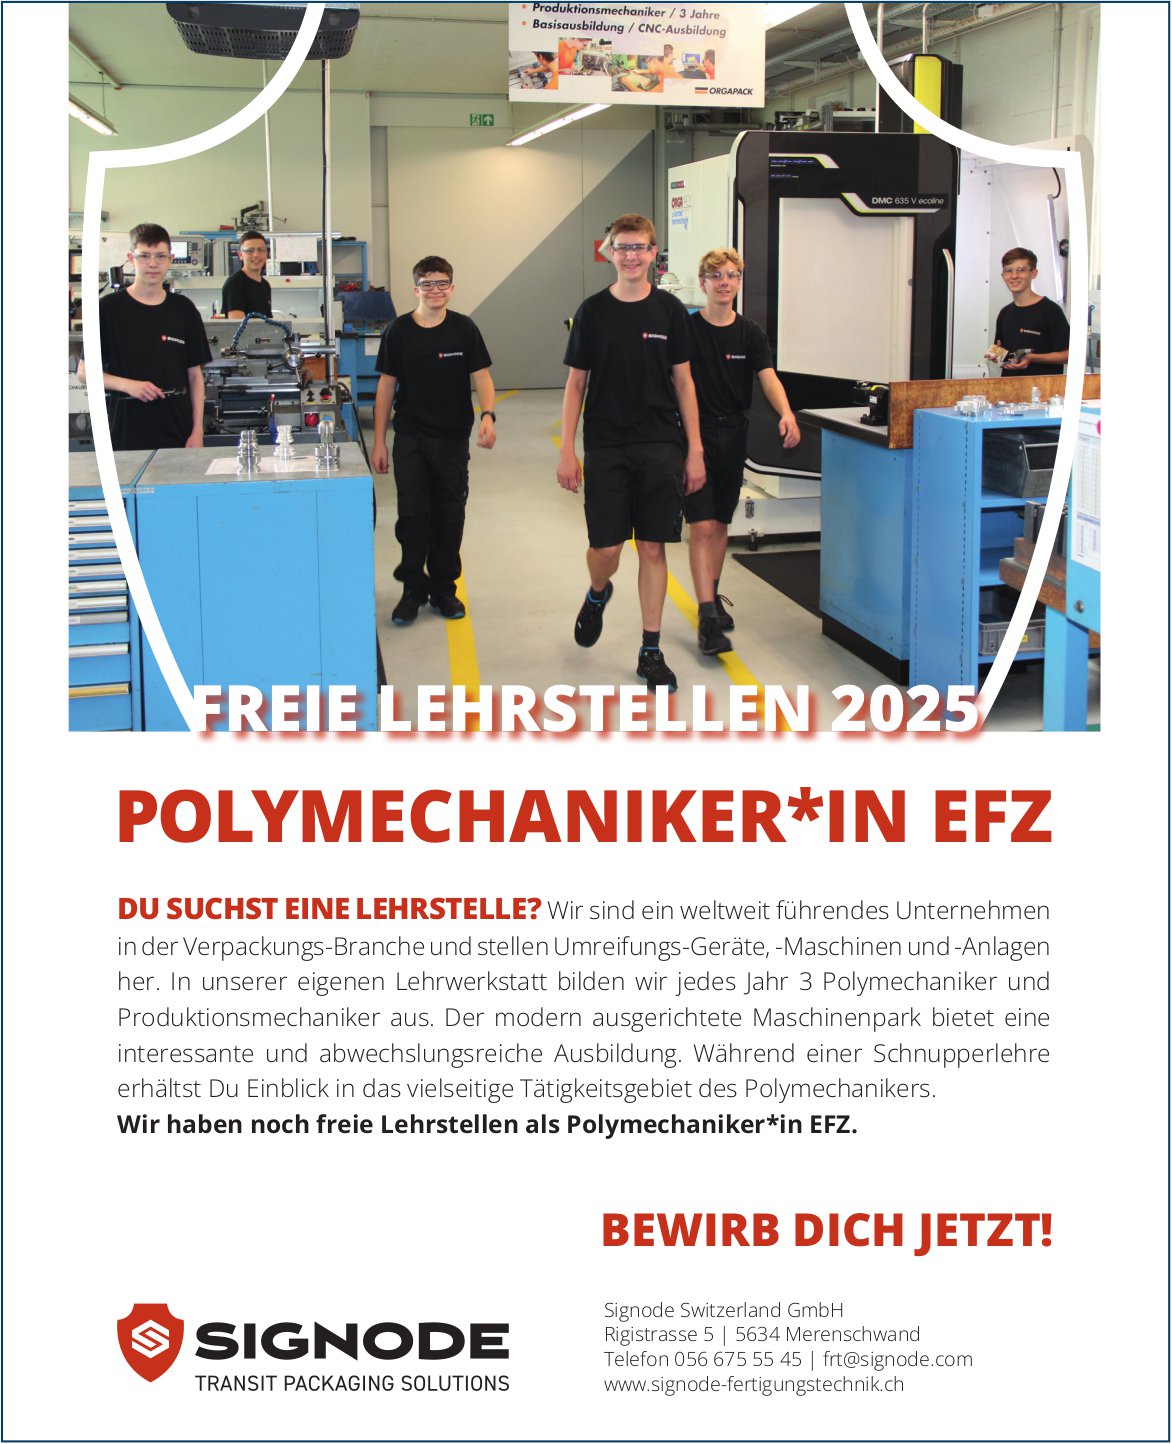 Signode Switzerland GmbH, Merenschwand - Lehrstelle als Polymechaniker*in EFZ, zu vergeben